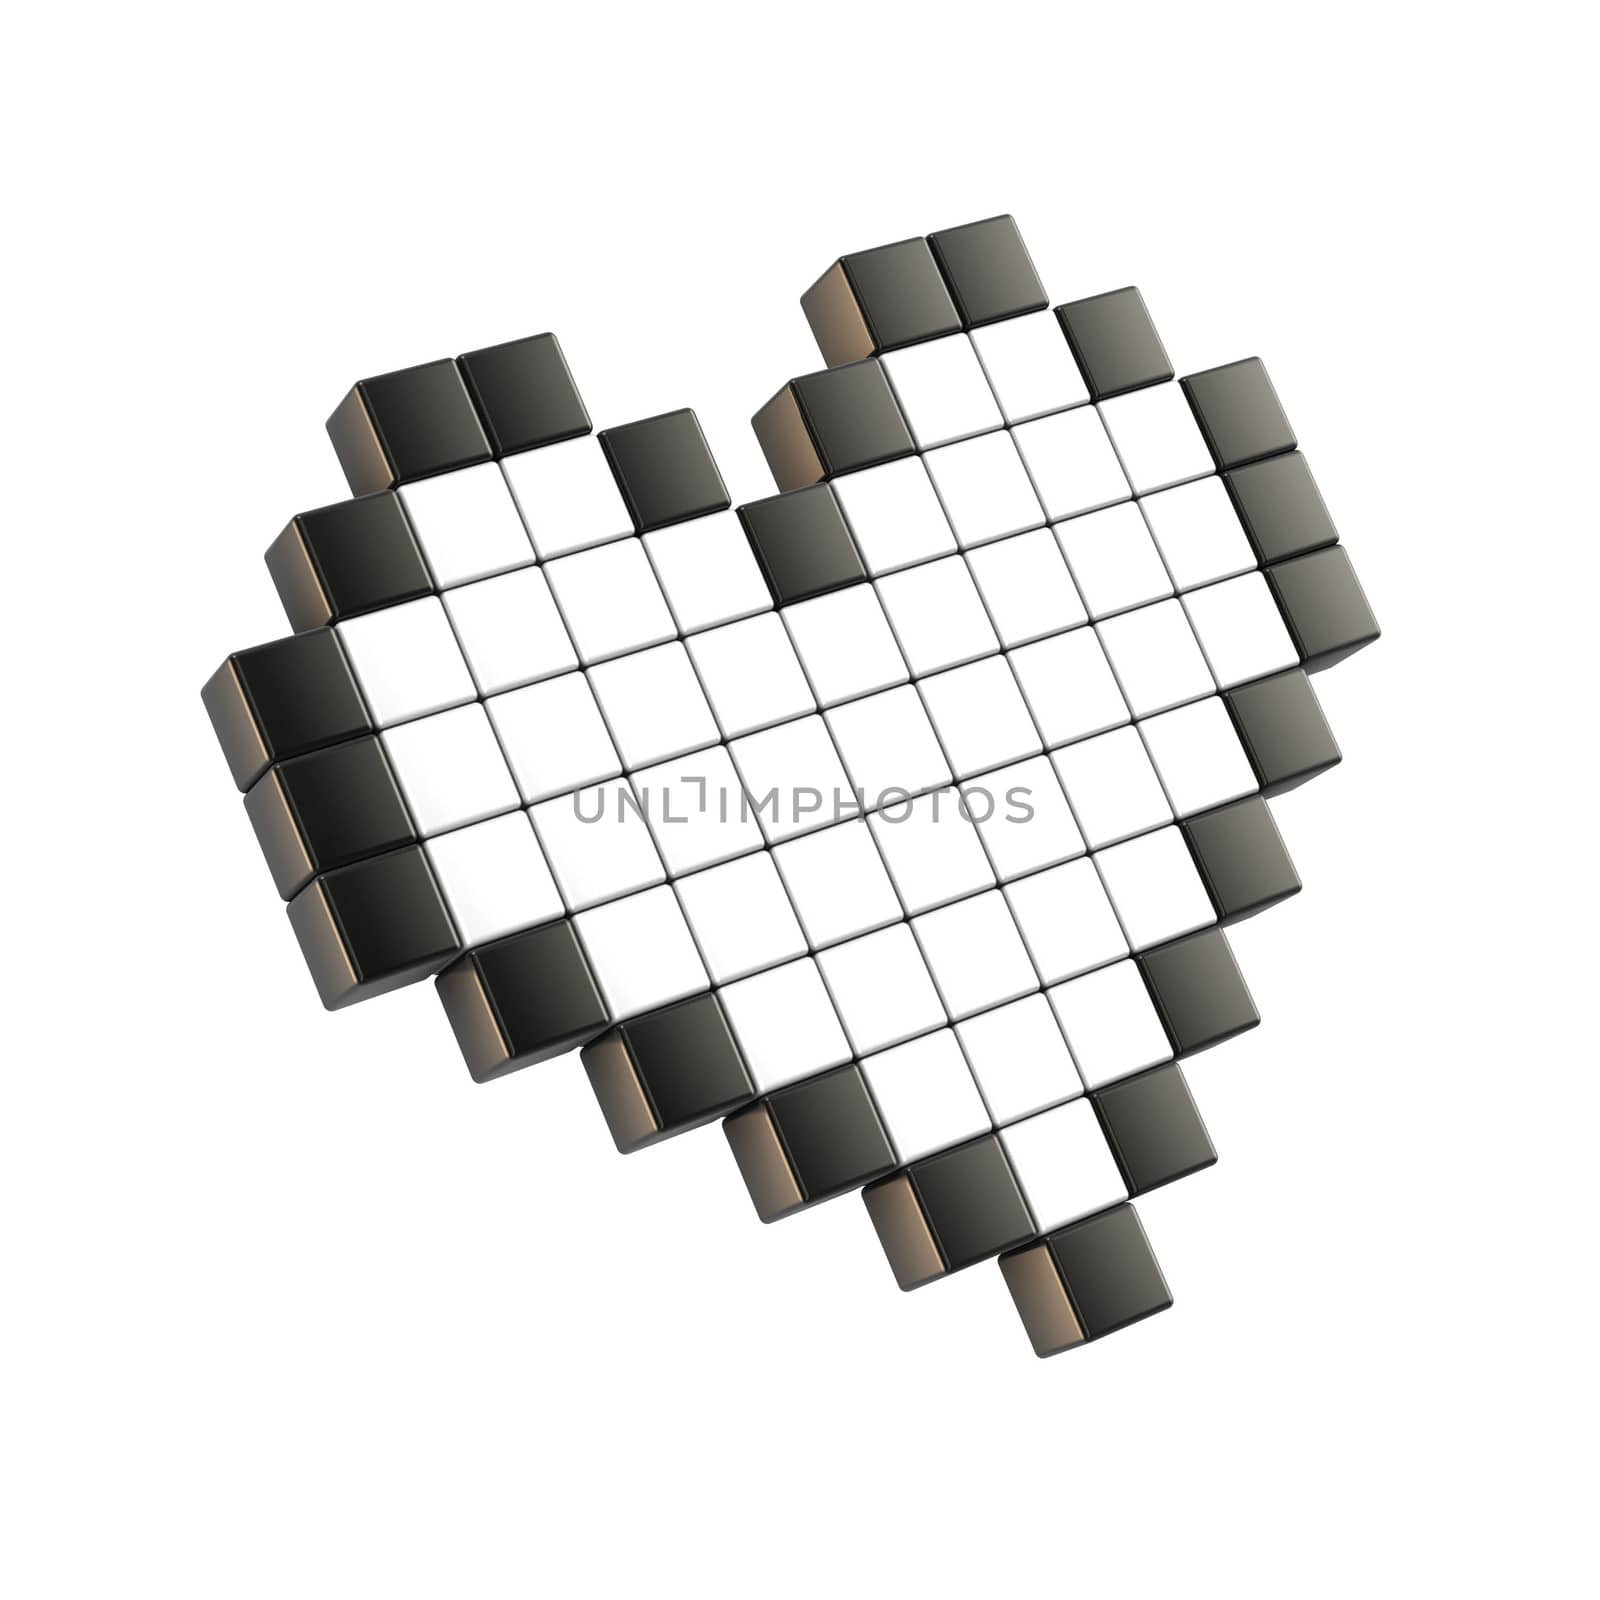 White pixel heart. 3D by djmilic